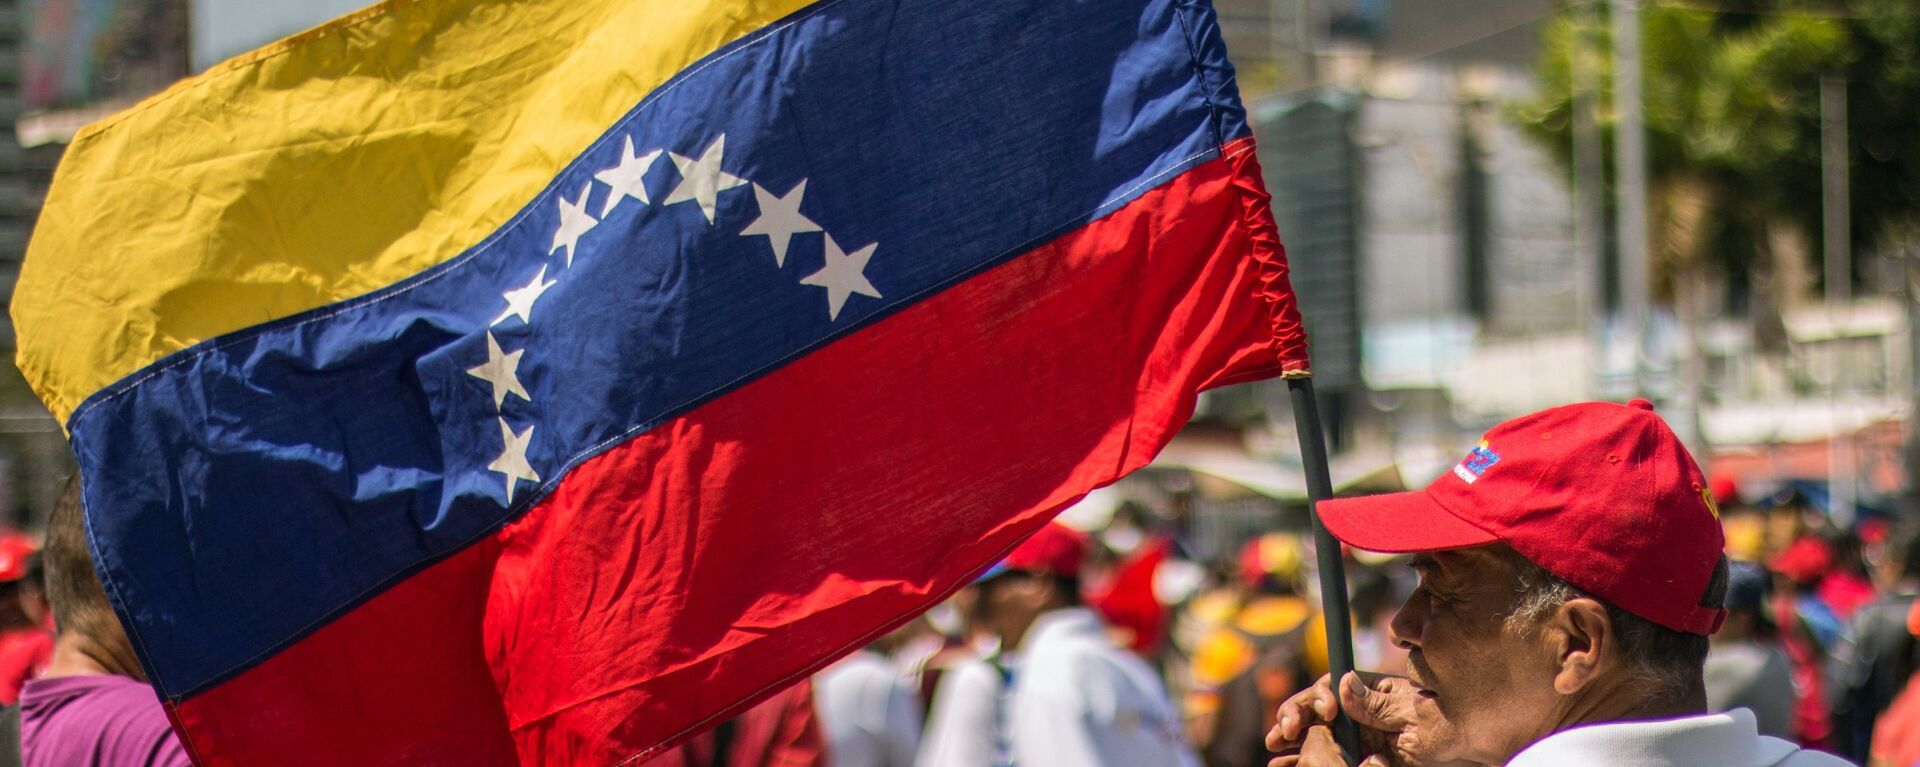 Un hombre con la bandera de Venezuela - Sputnik Mundo, 1920, 16.09.2021